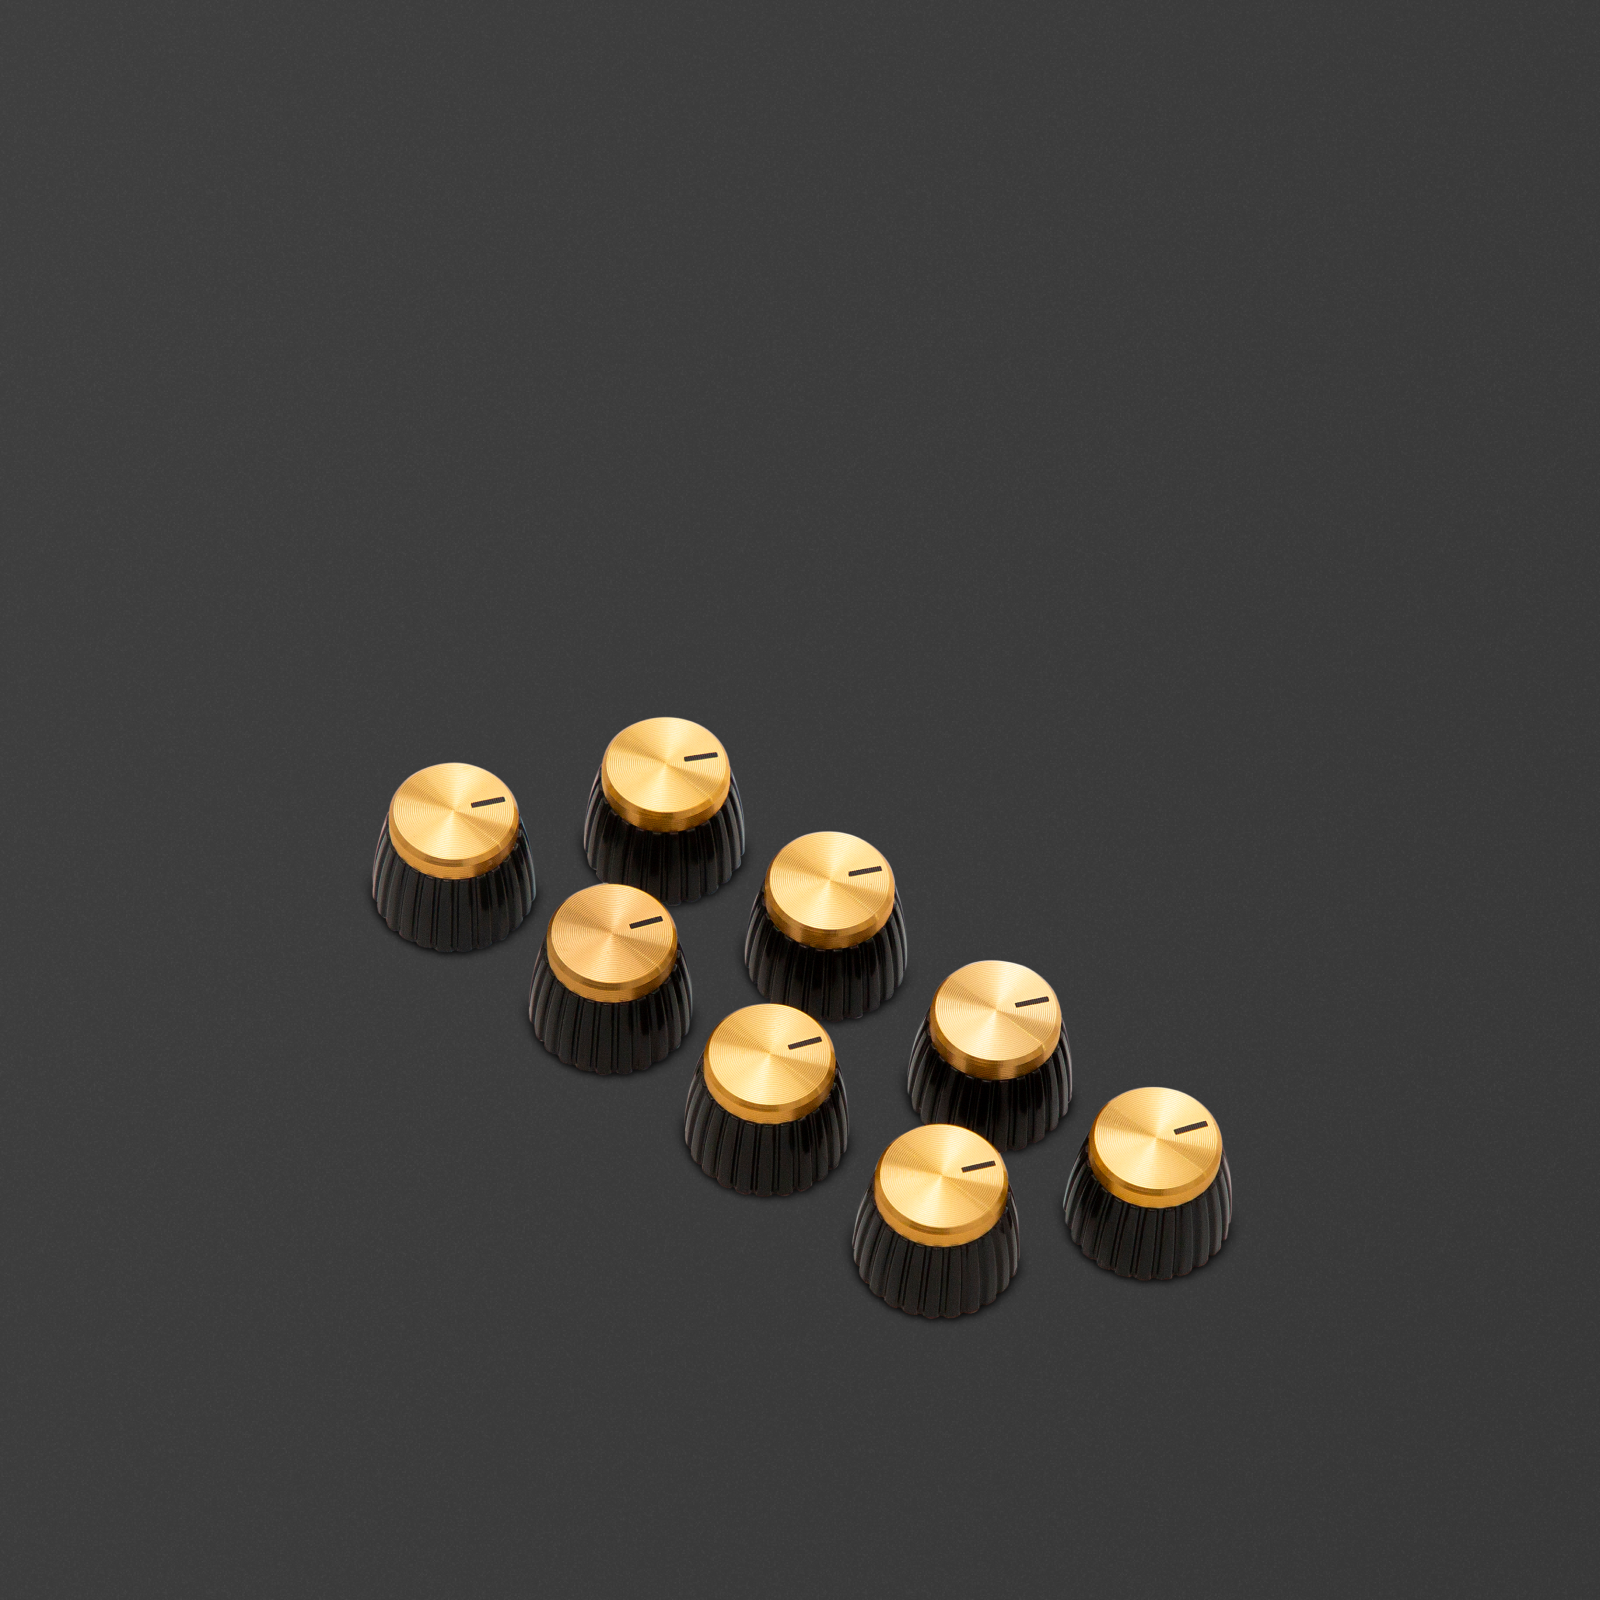 Packung mit 8 goldenen D-Schaft-Knöpfen, bei denen die Markierung auf die runde Seite des D-Schafts zeigt